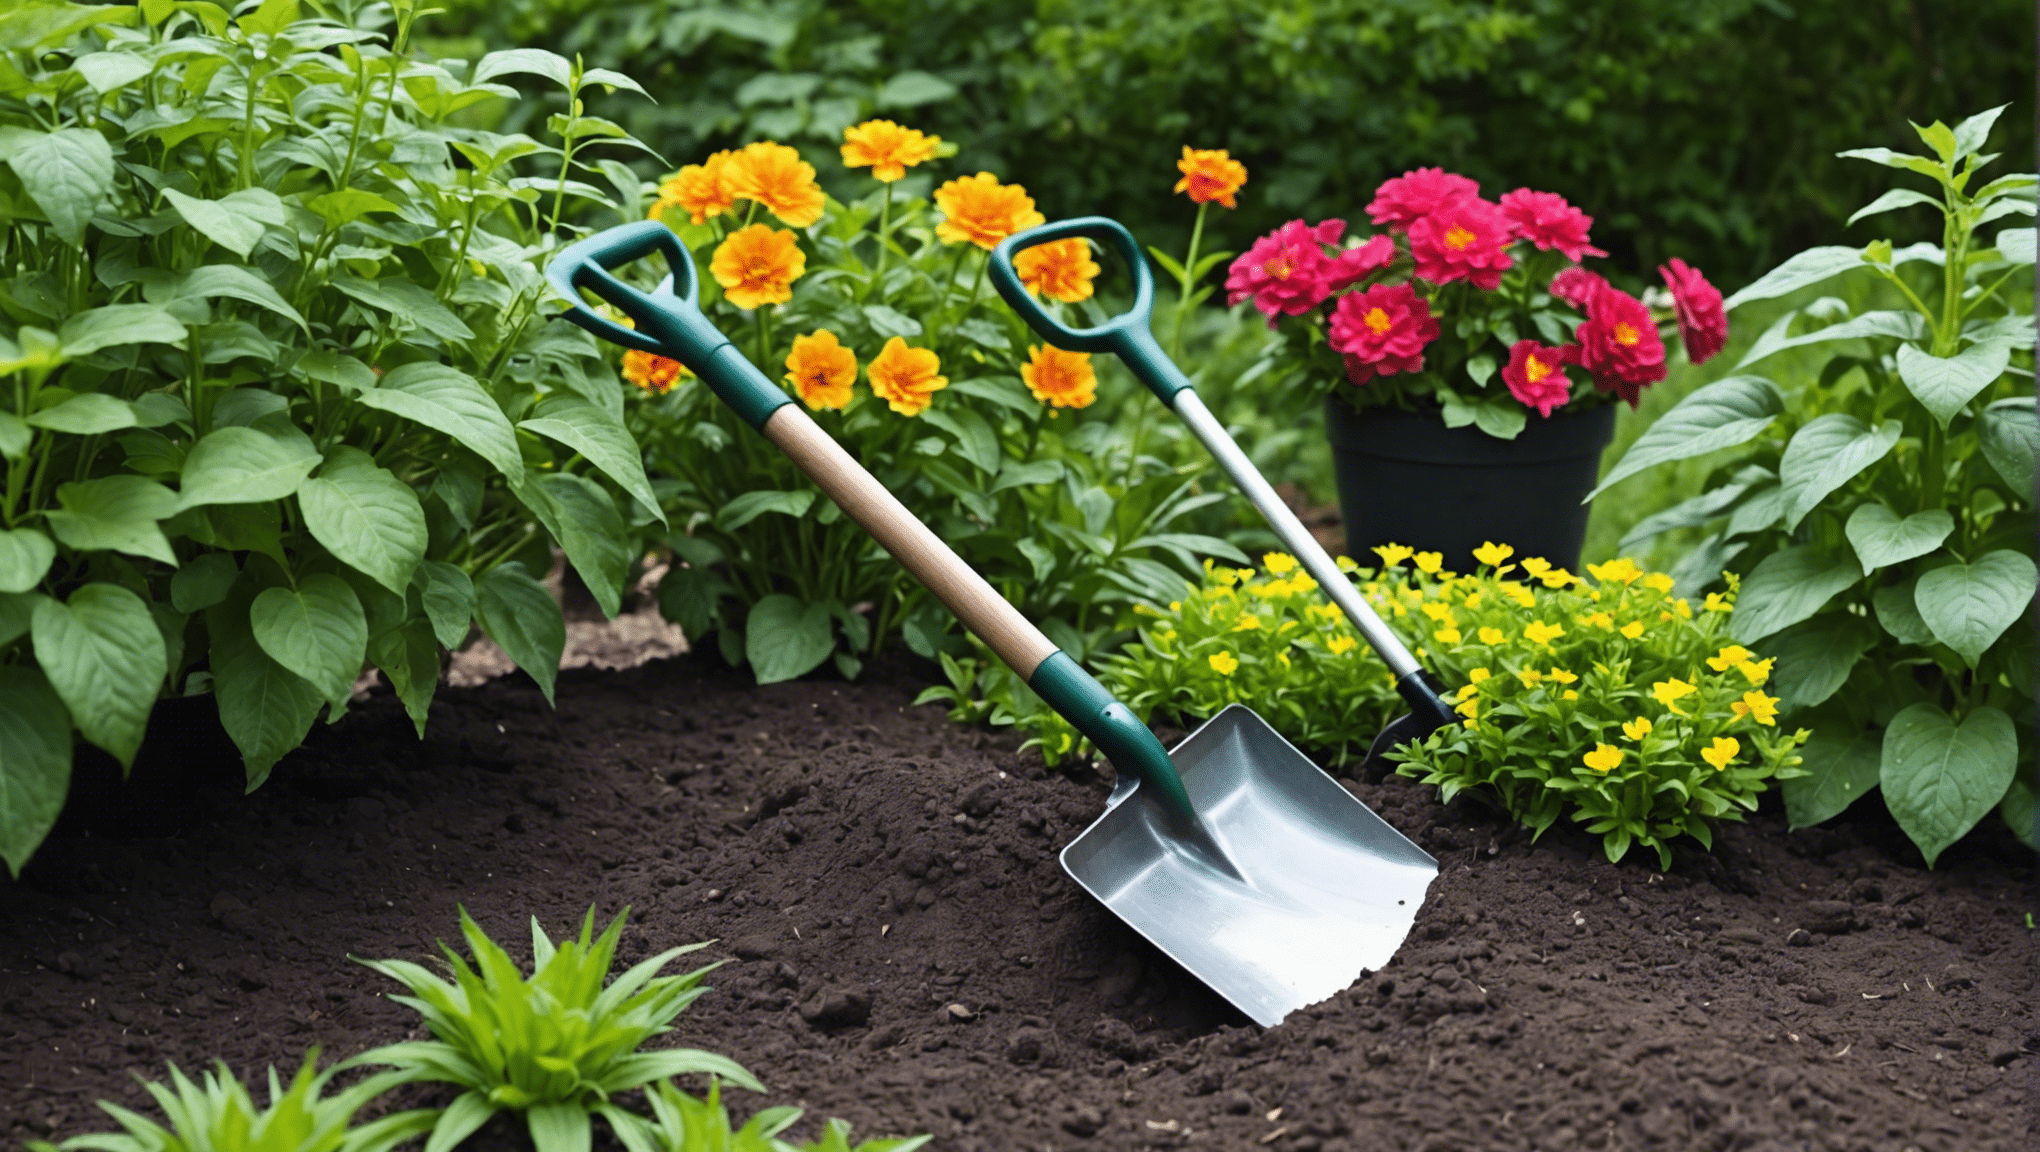 Najděte ideální malou zahradní lopatu pro všechny vaše zahradnické potřeby s naším výběrem vysoce kvalitních a odolných nástrojů.